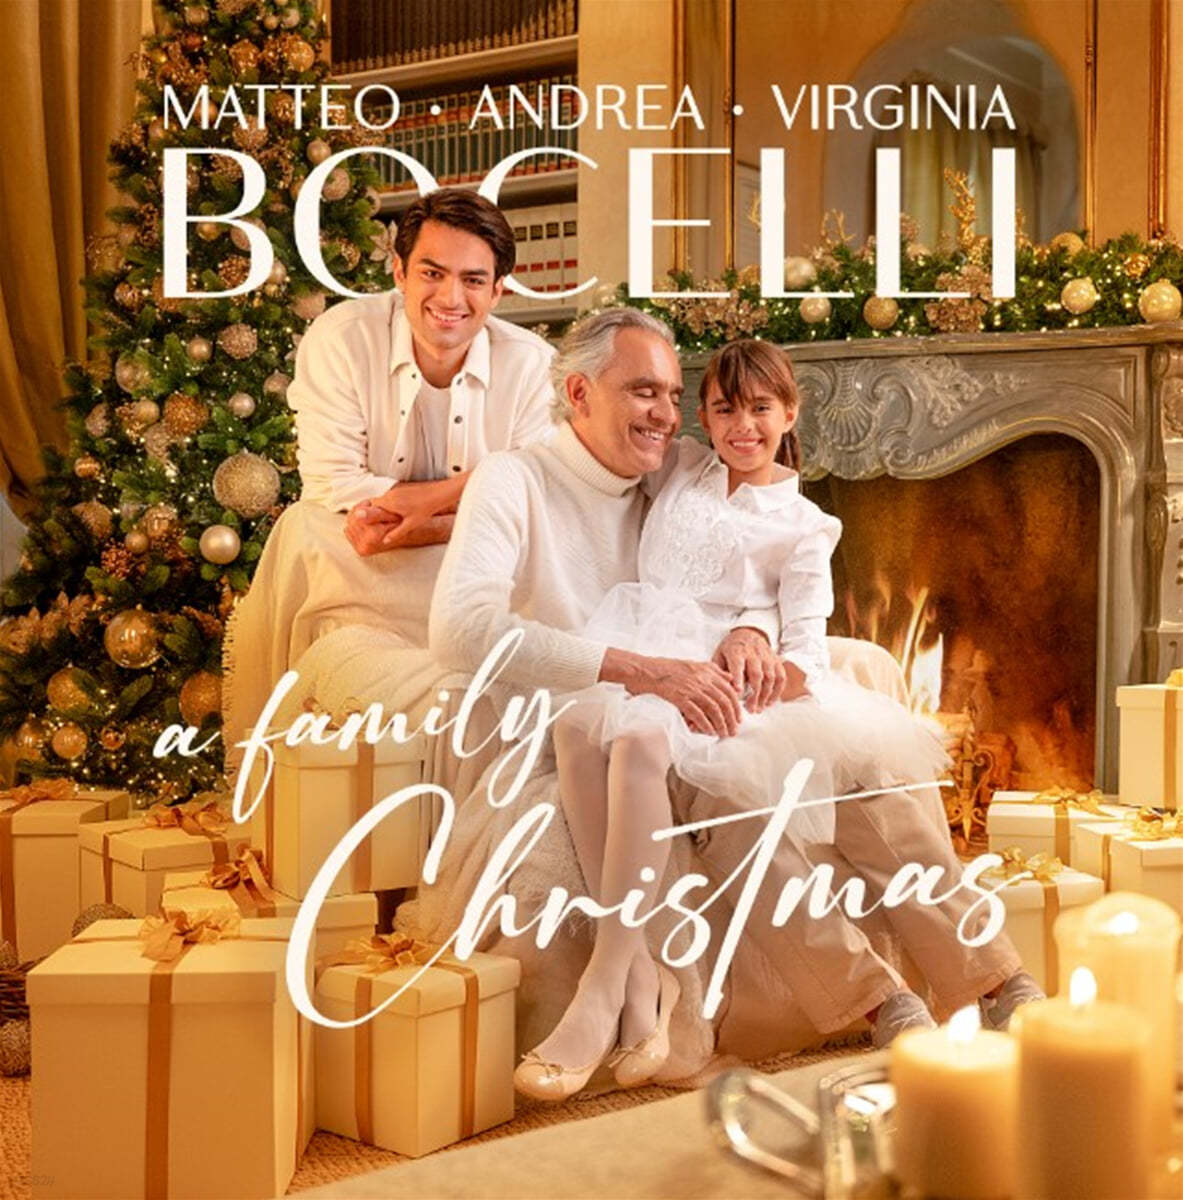 Andrea Bocelli 보첼리 가족의 크리스마스 음악 모음집 - 안드레아 보첼리 (A Family Christmas) [LP]